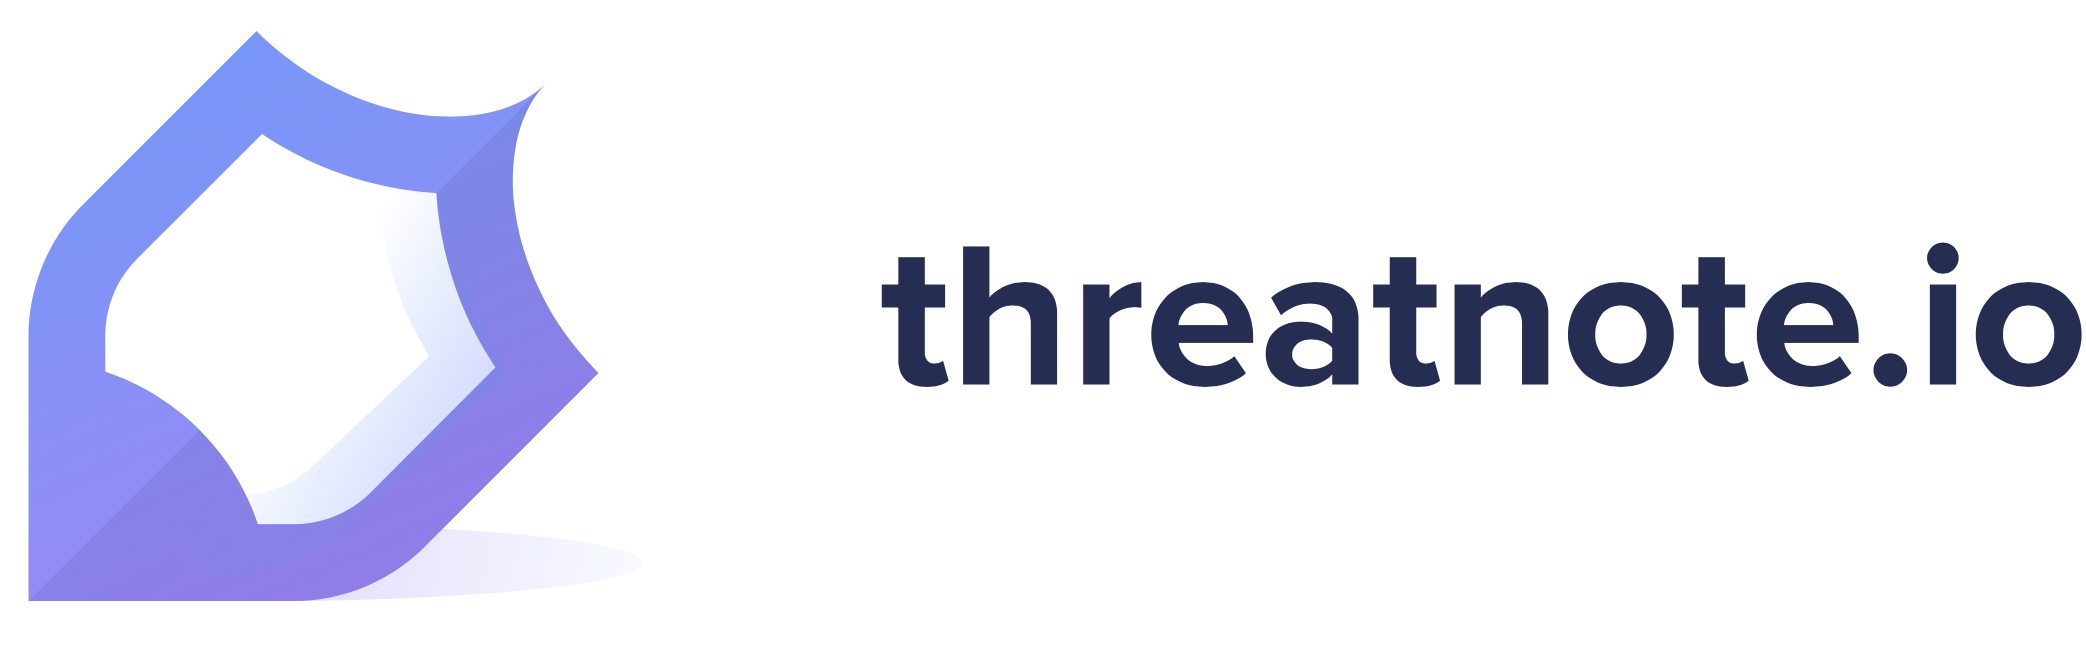 Threat_note